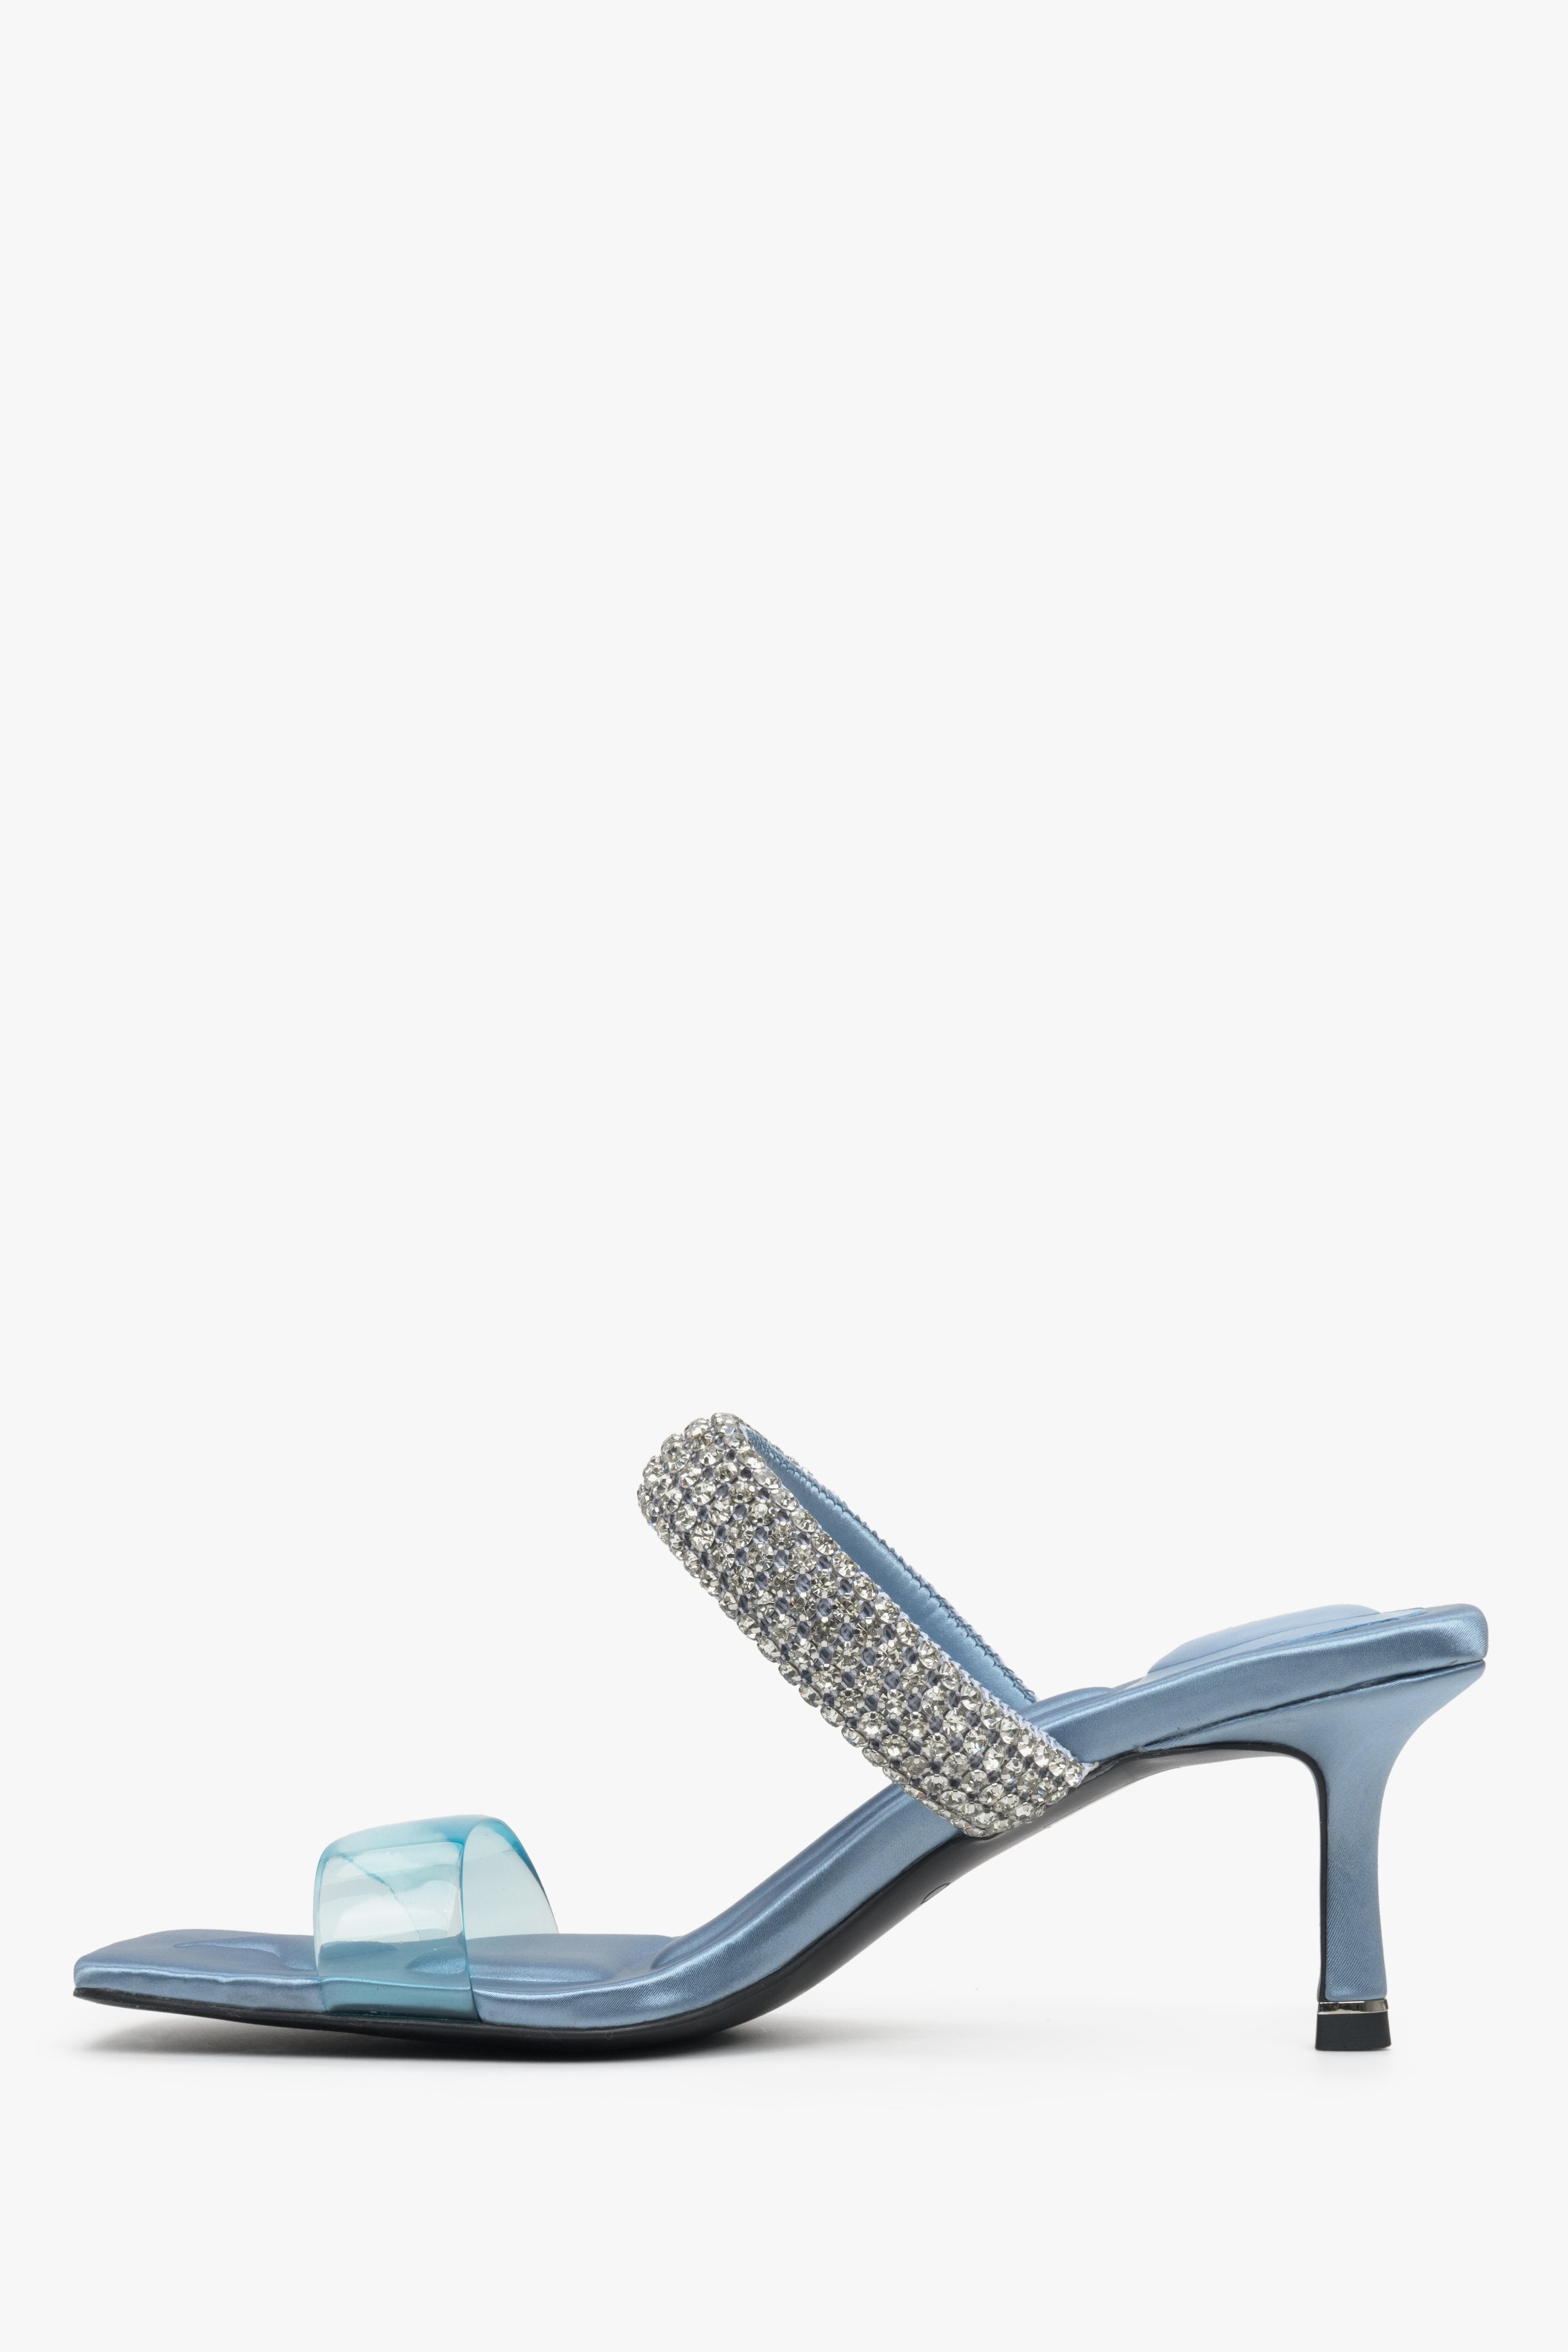 Skórzane, niebieskie klapki damskie na szpilce Estro z cyrkoniami - profil butów.